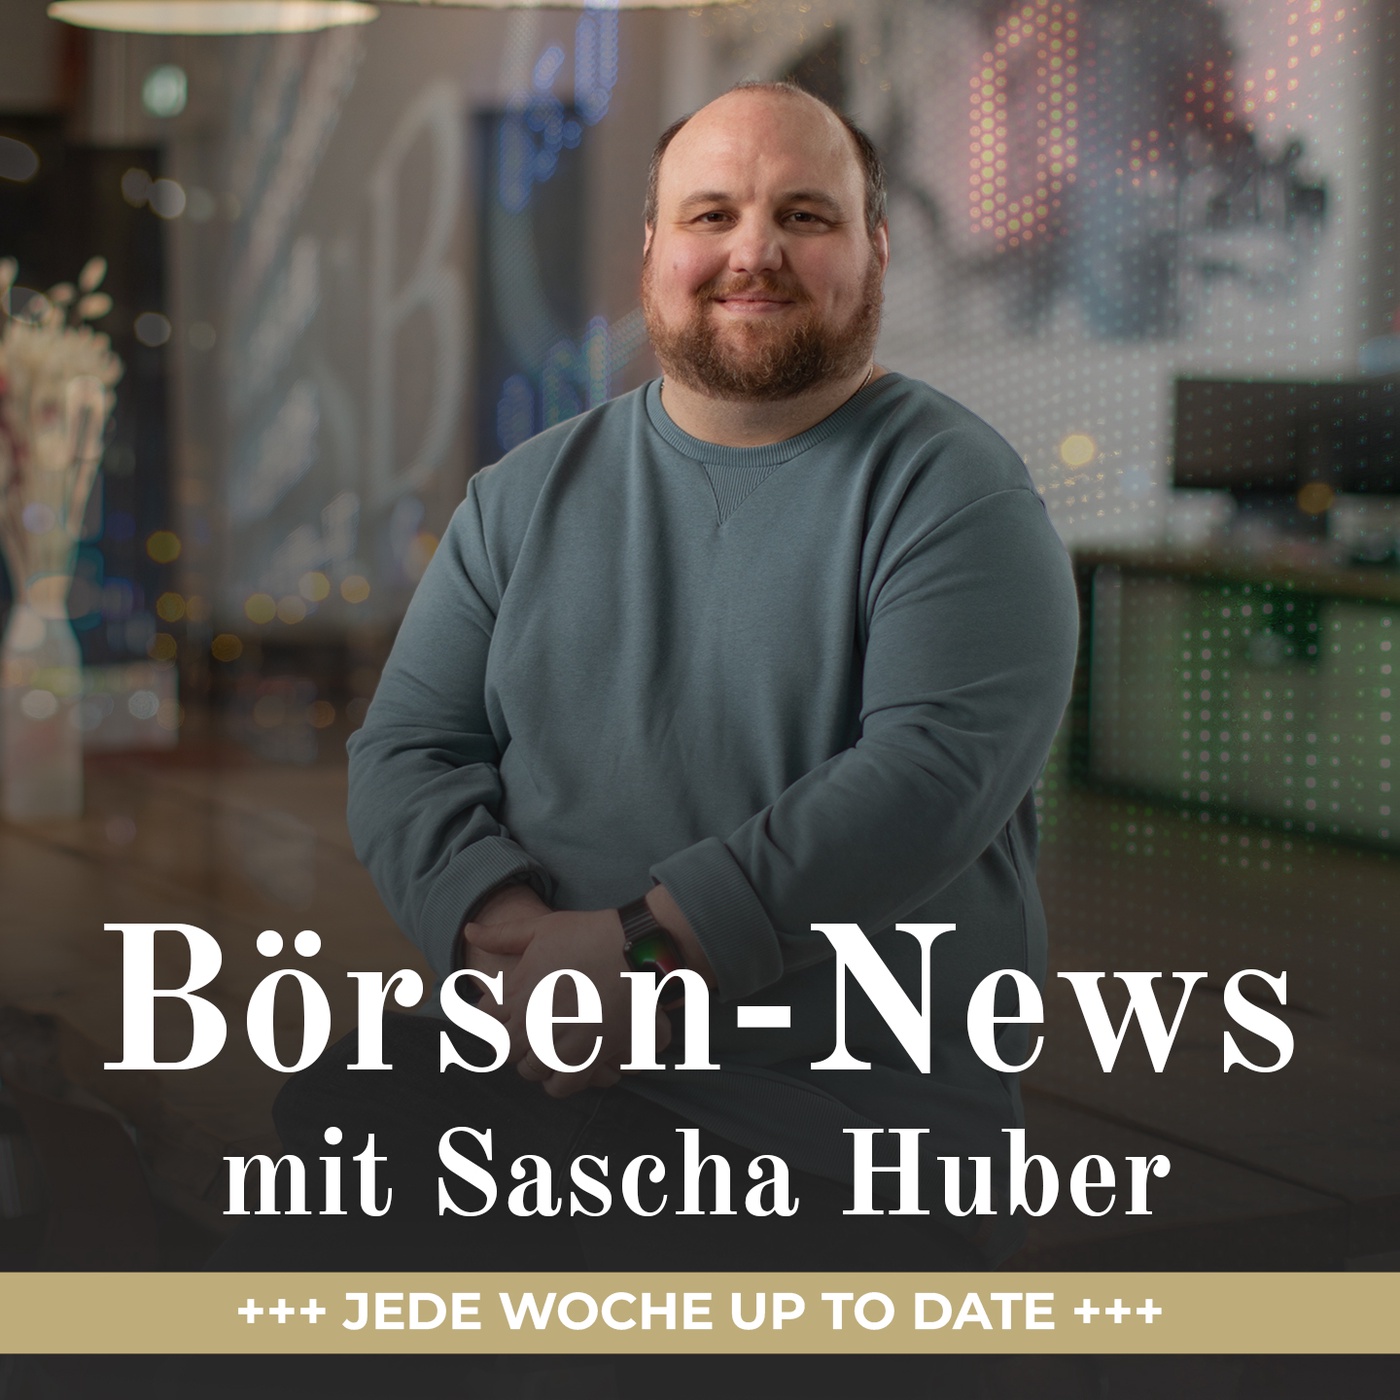 Börsen-News mit Sascha Huber